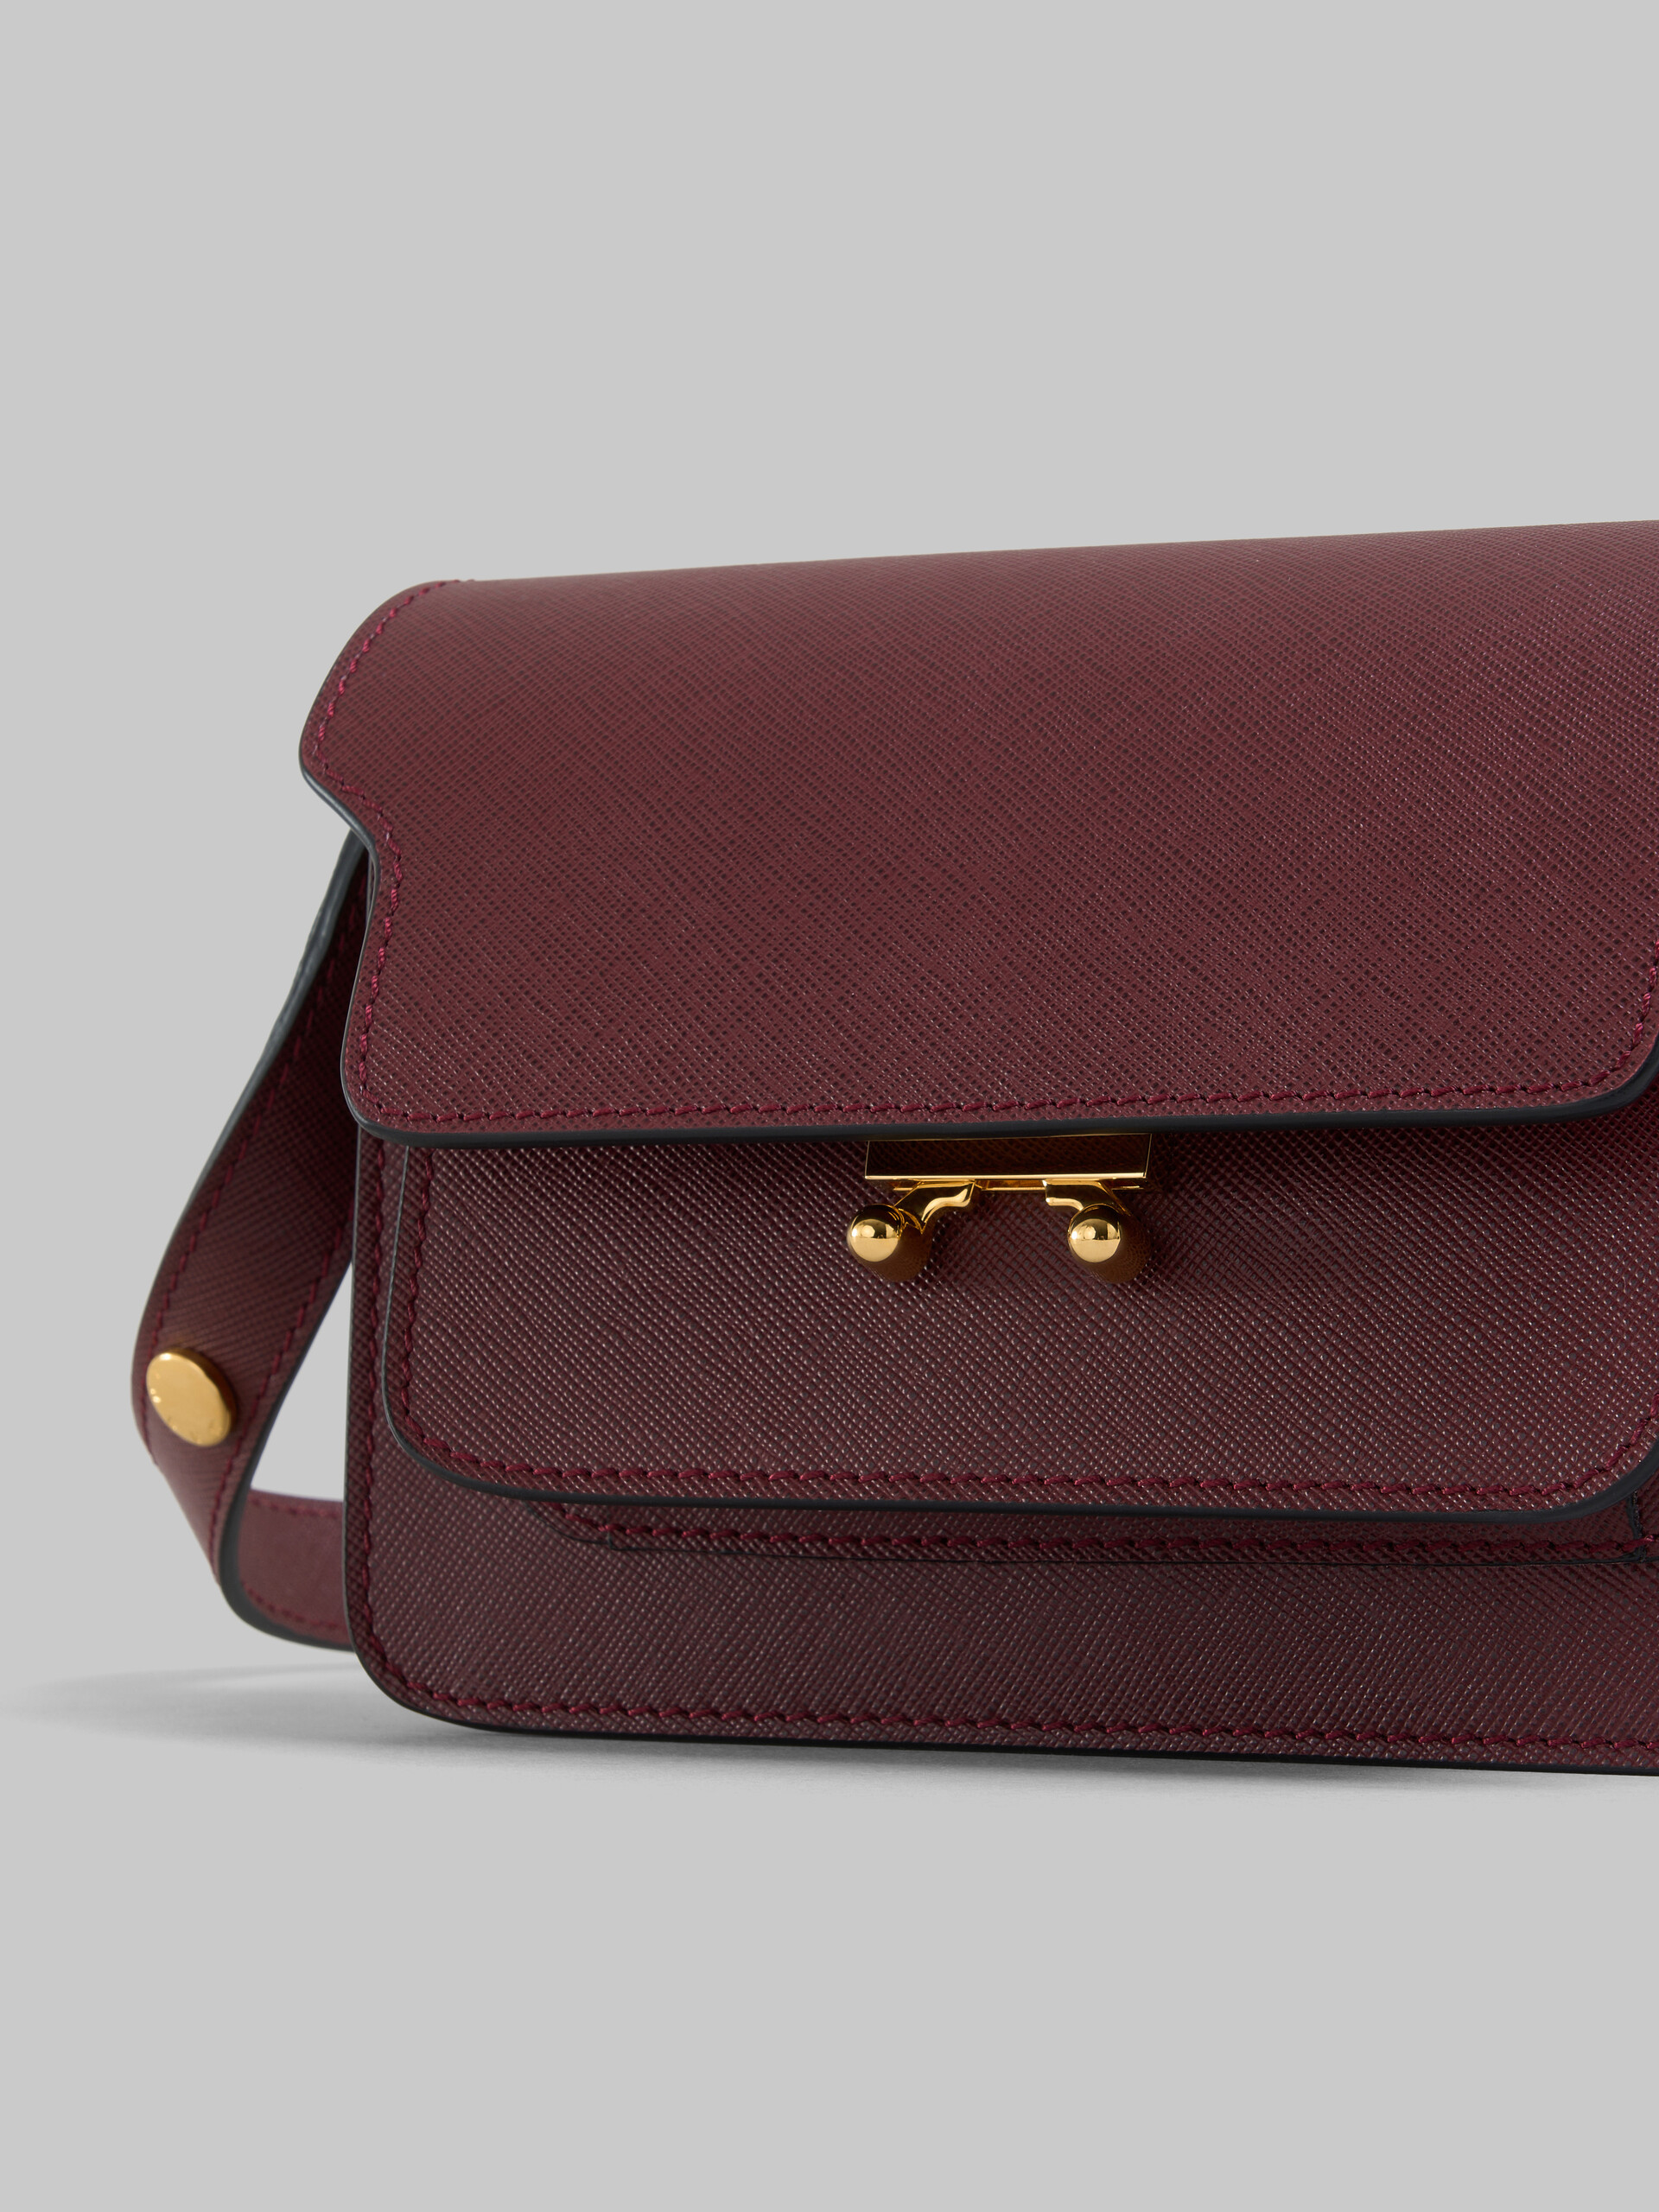 Trunk  Bag Mini in pelle saffiano marrone - Borse a spalla - Image 5